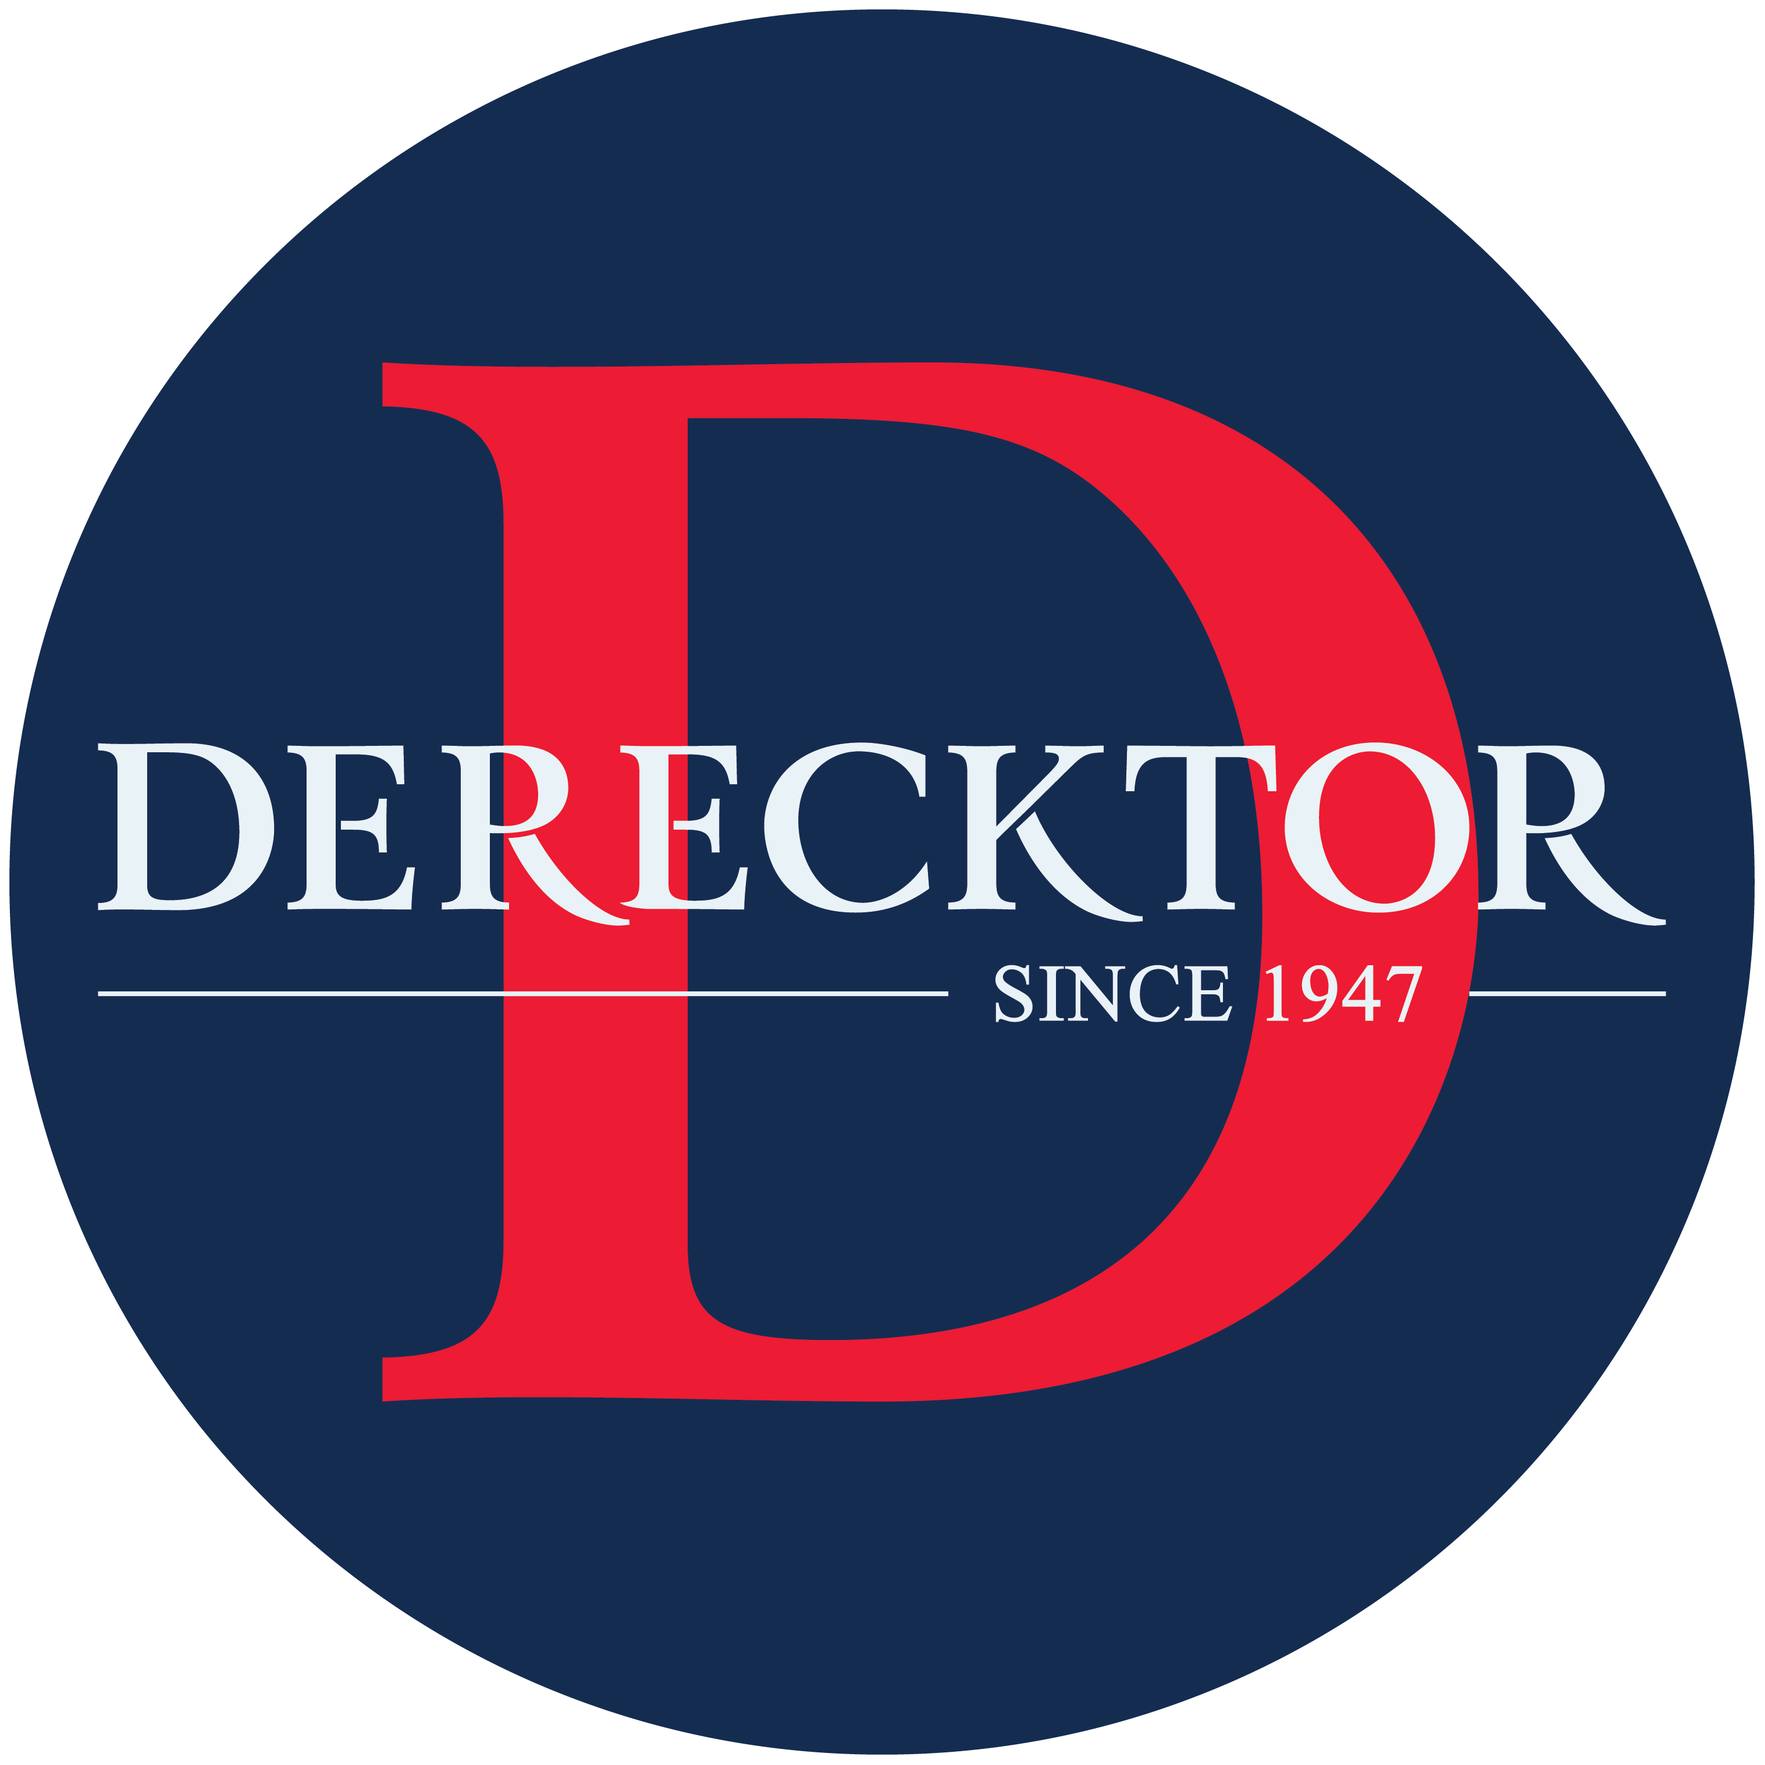 Derecktor logo